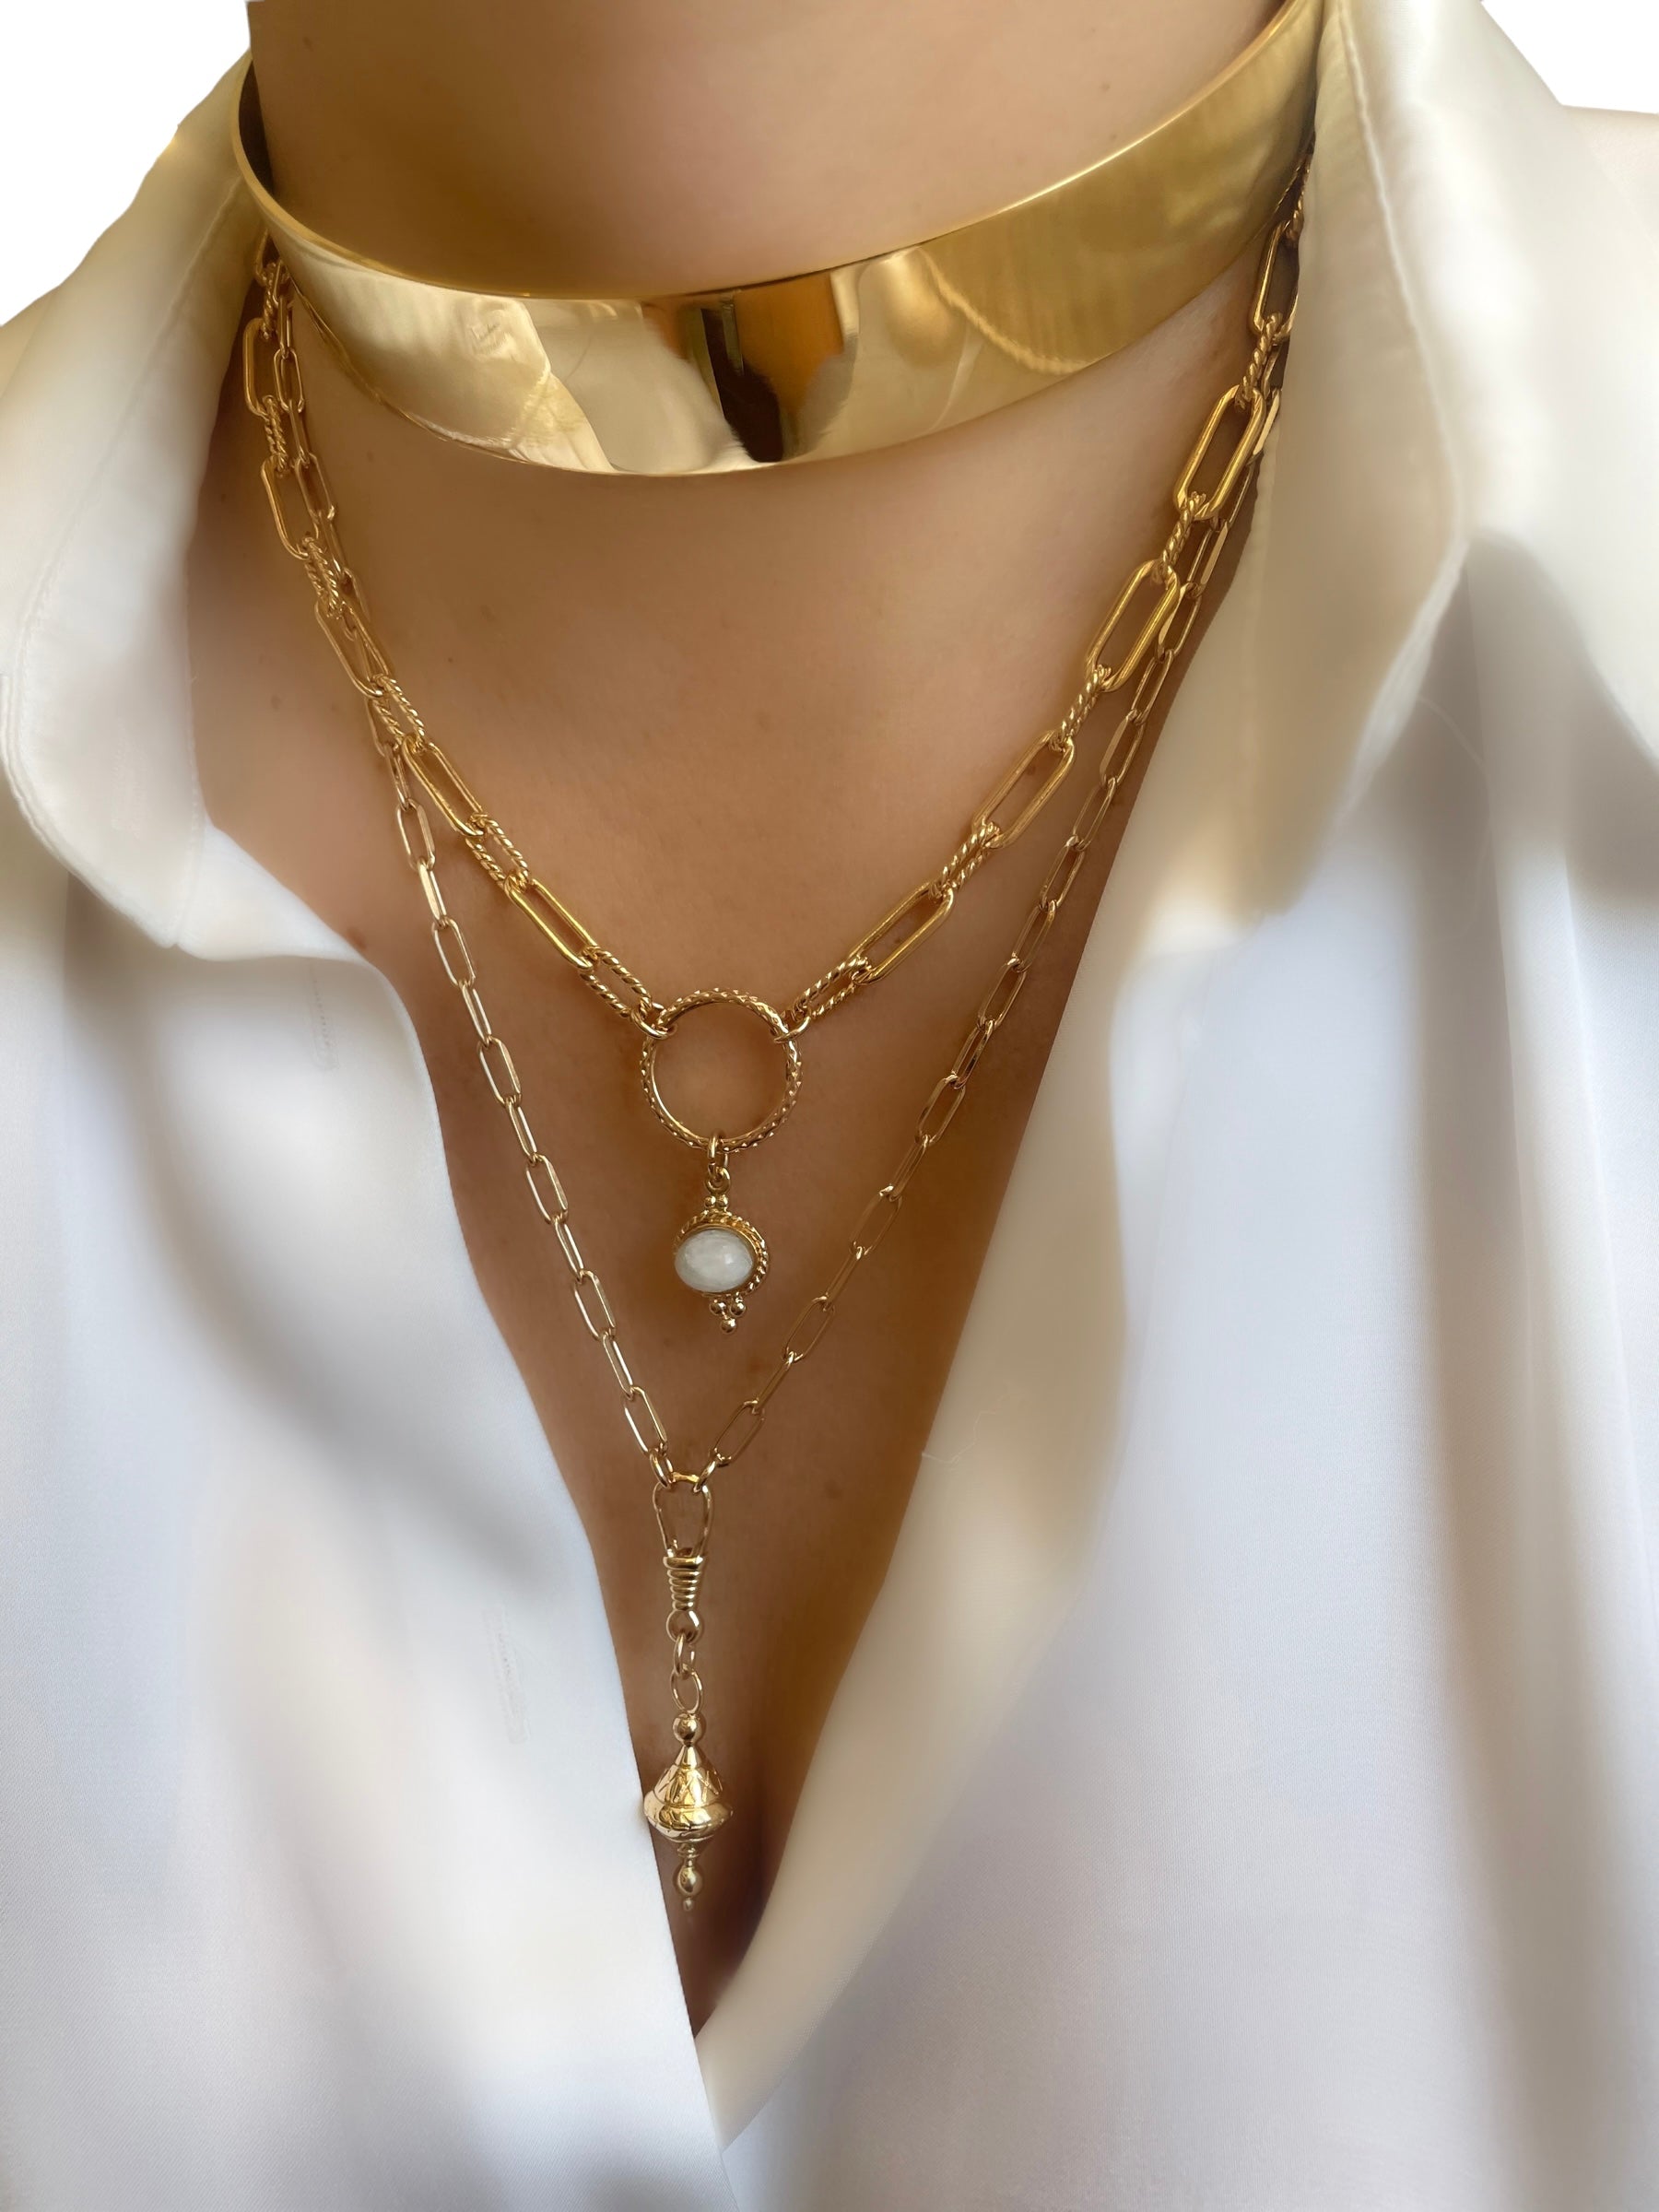 Le Marshand®  -  Joyería en plata 925, chapado en Oro 24K - Collar Gran Choker - Diseños propios - Brazaletes, pulseras, collares y pendientes - Joyería online - Mallorca